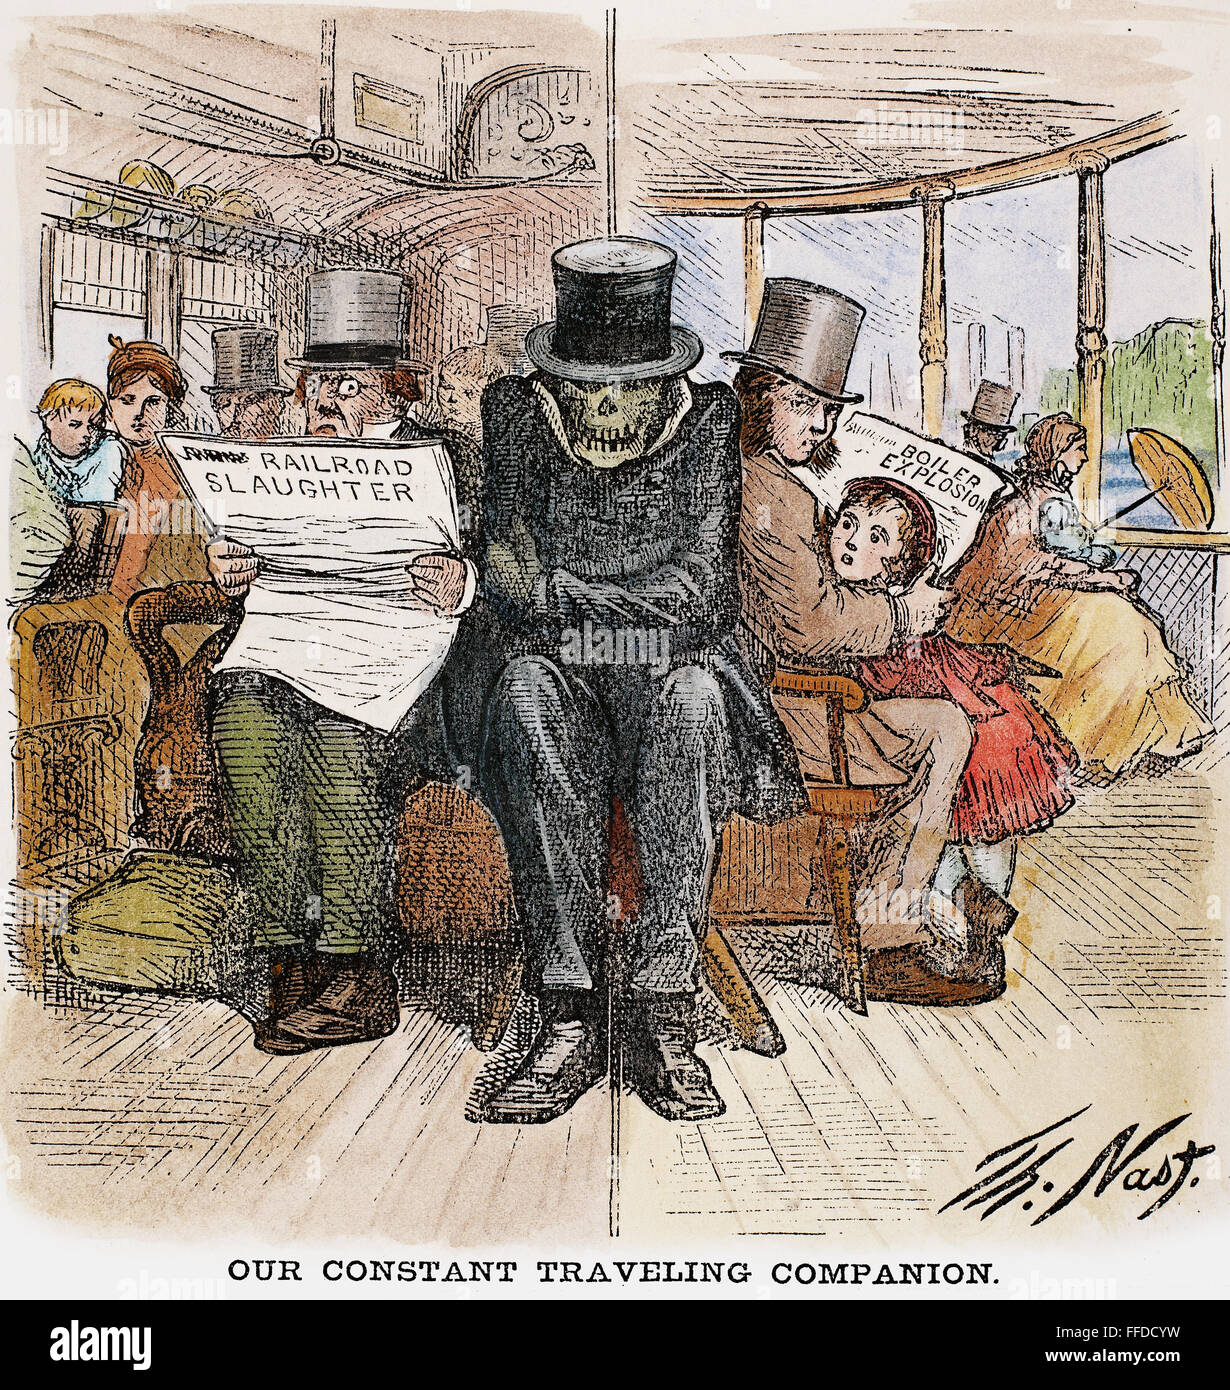 Incidenti ferroviari, 1871. /N'la nostra costante compagna di viaggio." fumetto americano commento da Thomas Nast, 1871, il frequente ferrovia fatale (sinistra) e steamboat (destra) incidenti del tempo. Foto Stock